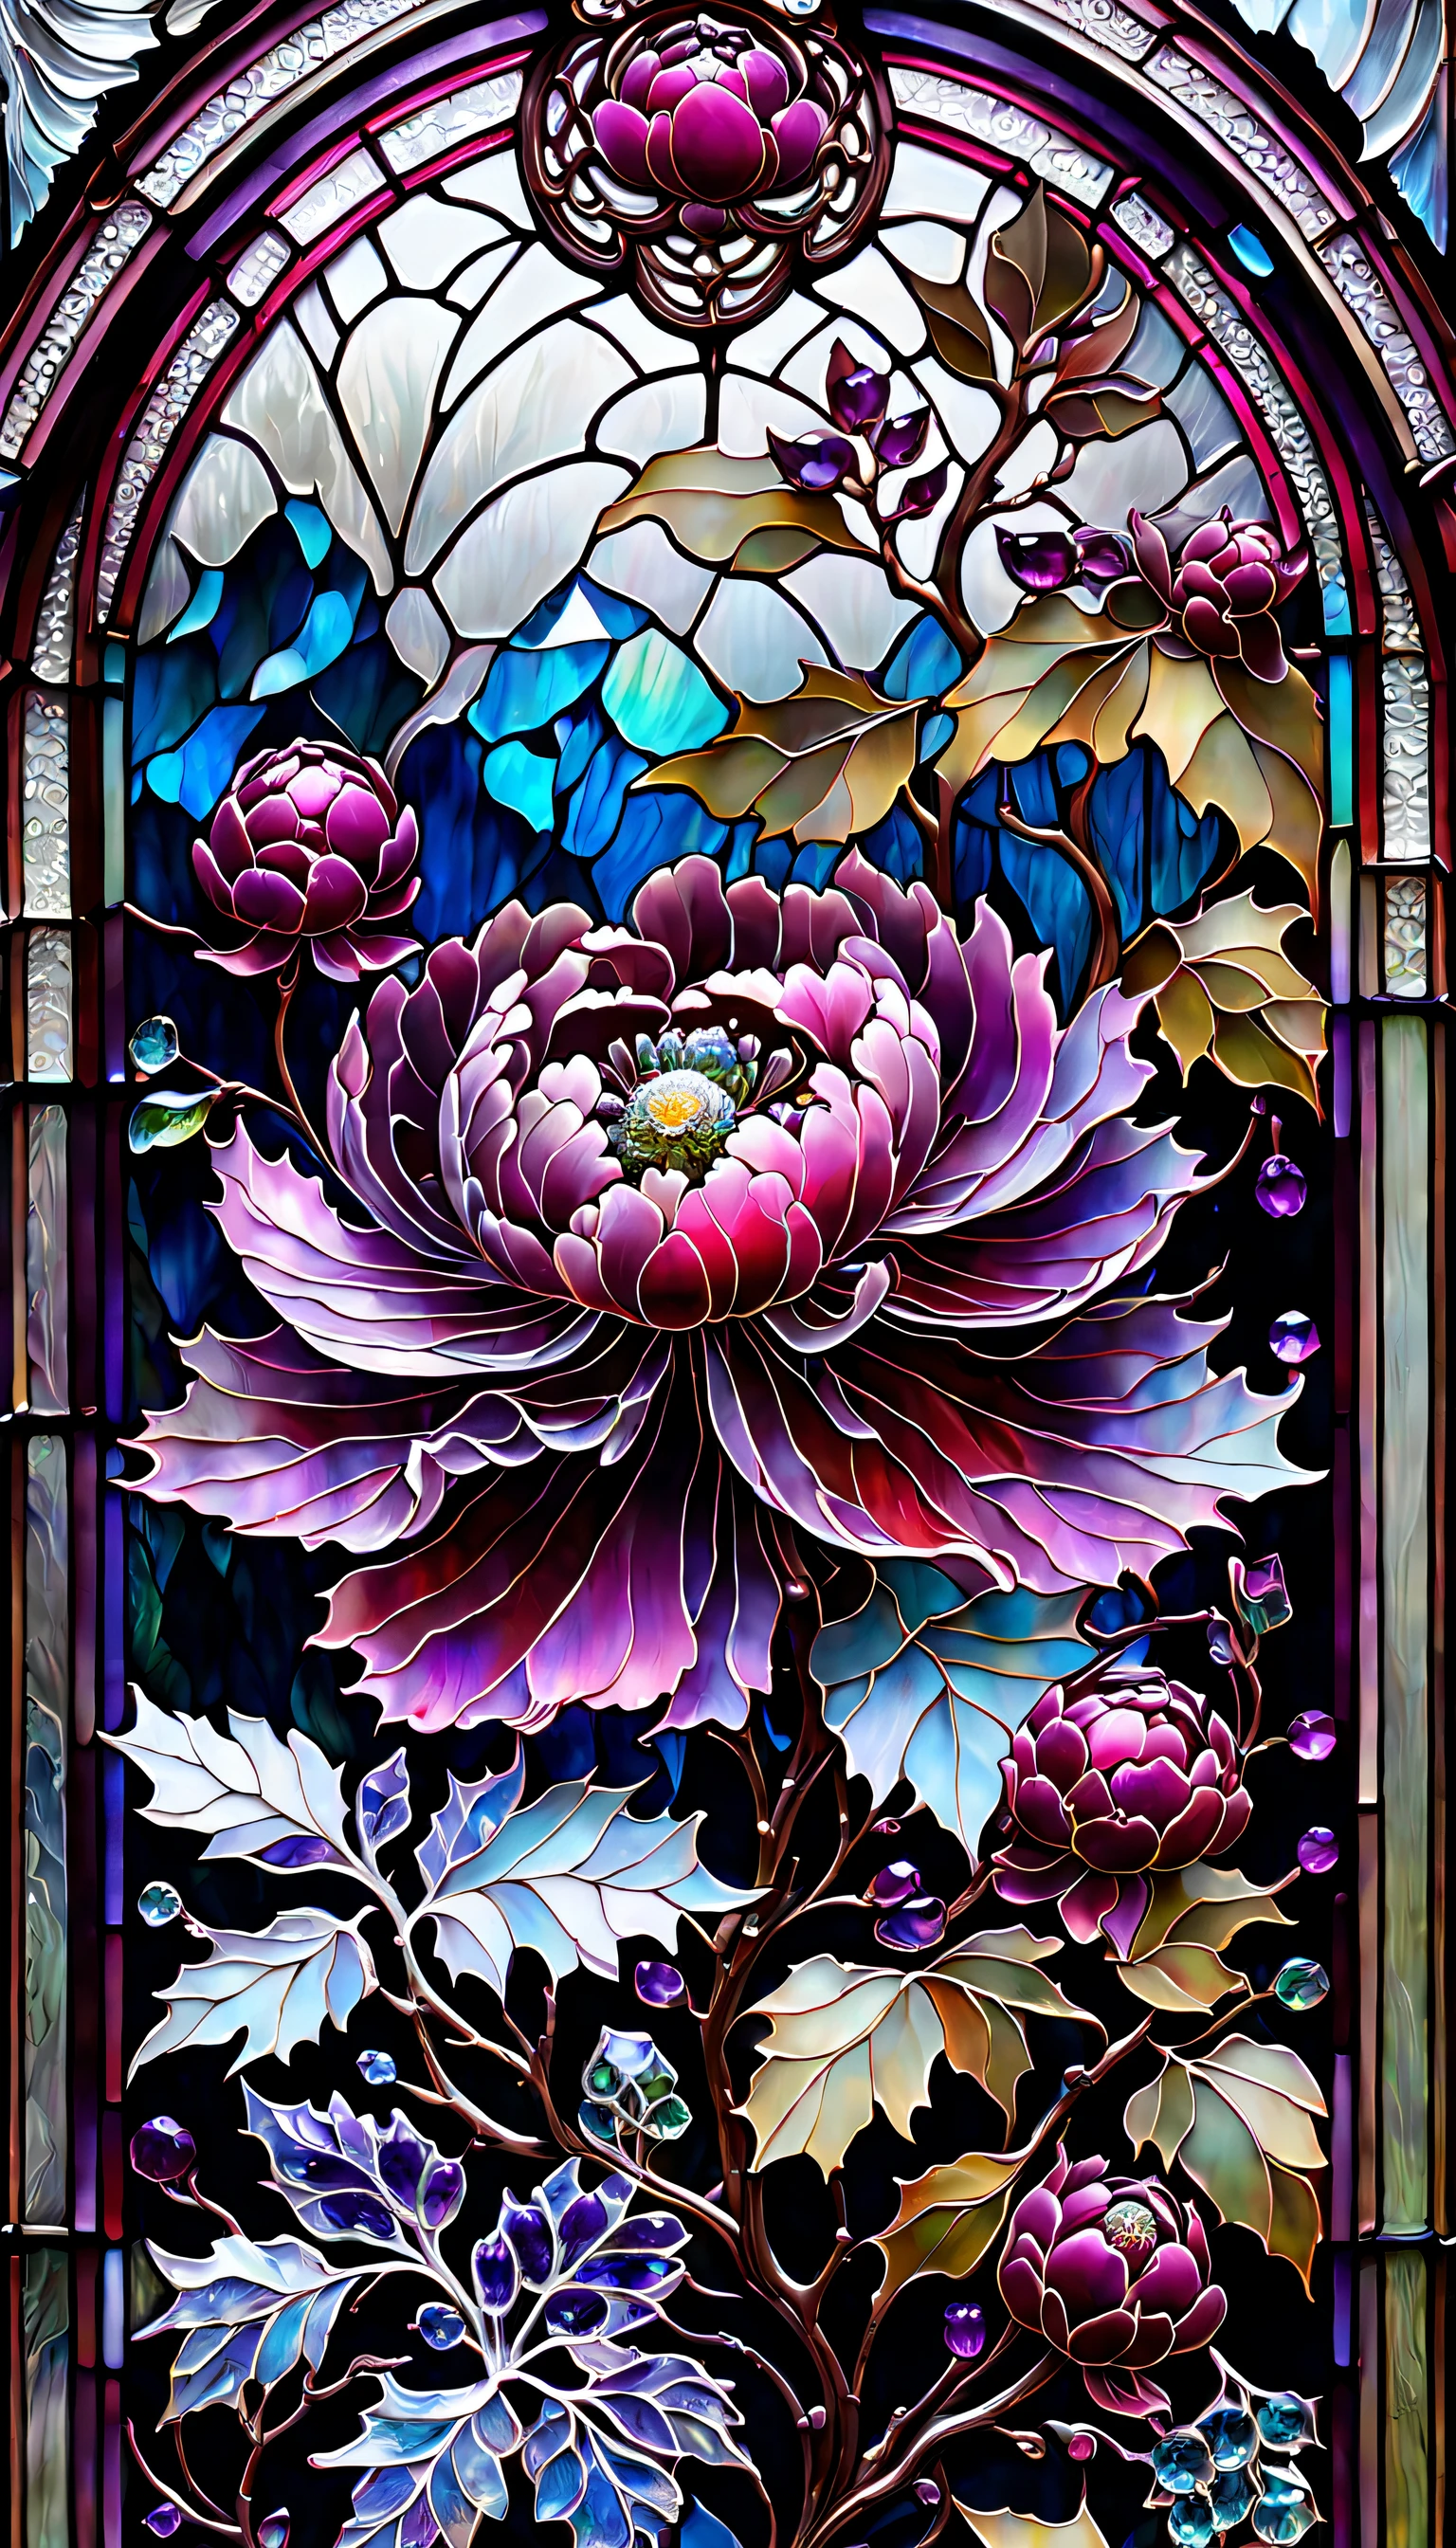 3色, 映画のような, 透明ガラスの日本庭園, ルビー牡丹の花, 氷 霜, バロック, 放送, 非常に精巧なステンドグラス, アメジスト結晶, ラブラドライトの虹色結晶, アンディ・ケホー, ジョン・ブランシュ, 複雑で非常に詳細な背景, ファンタジー, フィリグリー, フィリグリー detailed, 複雑な